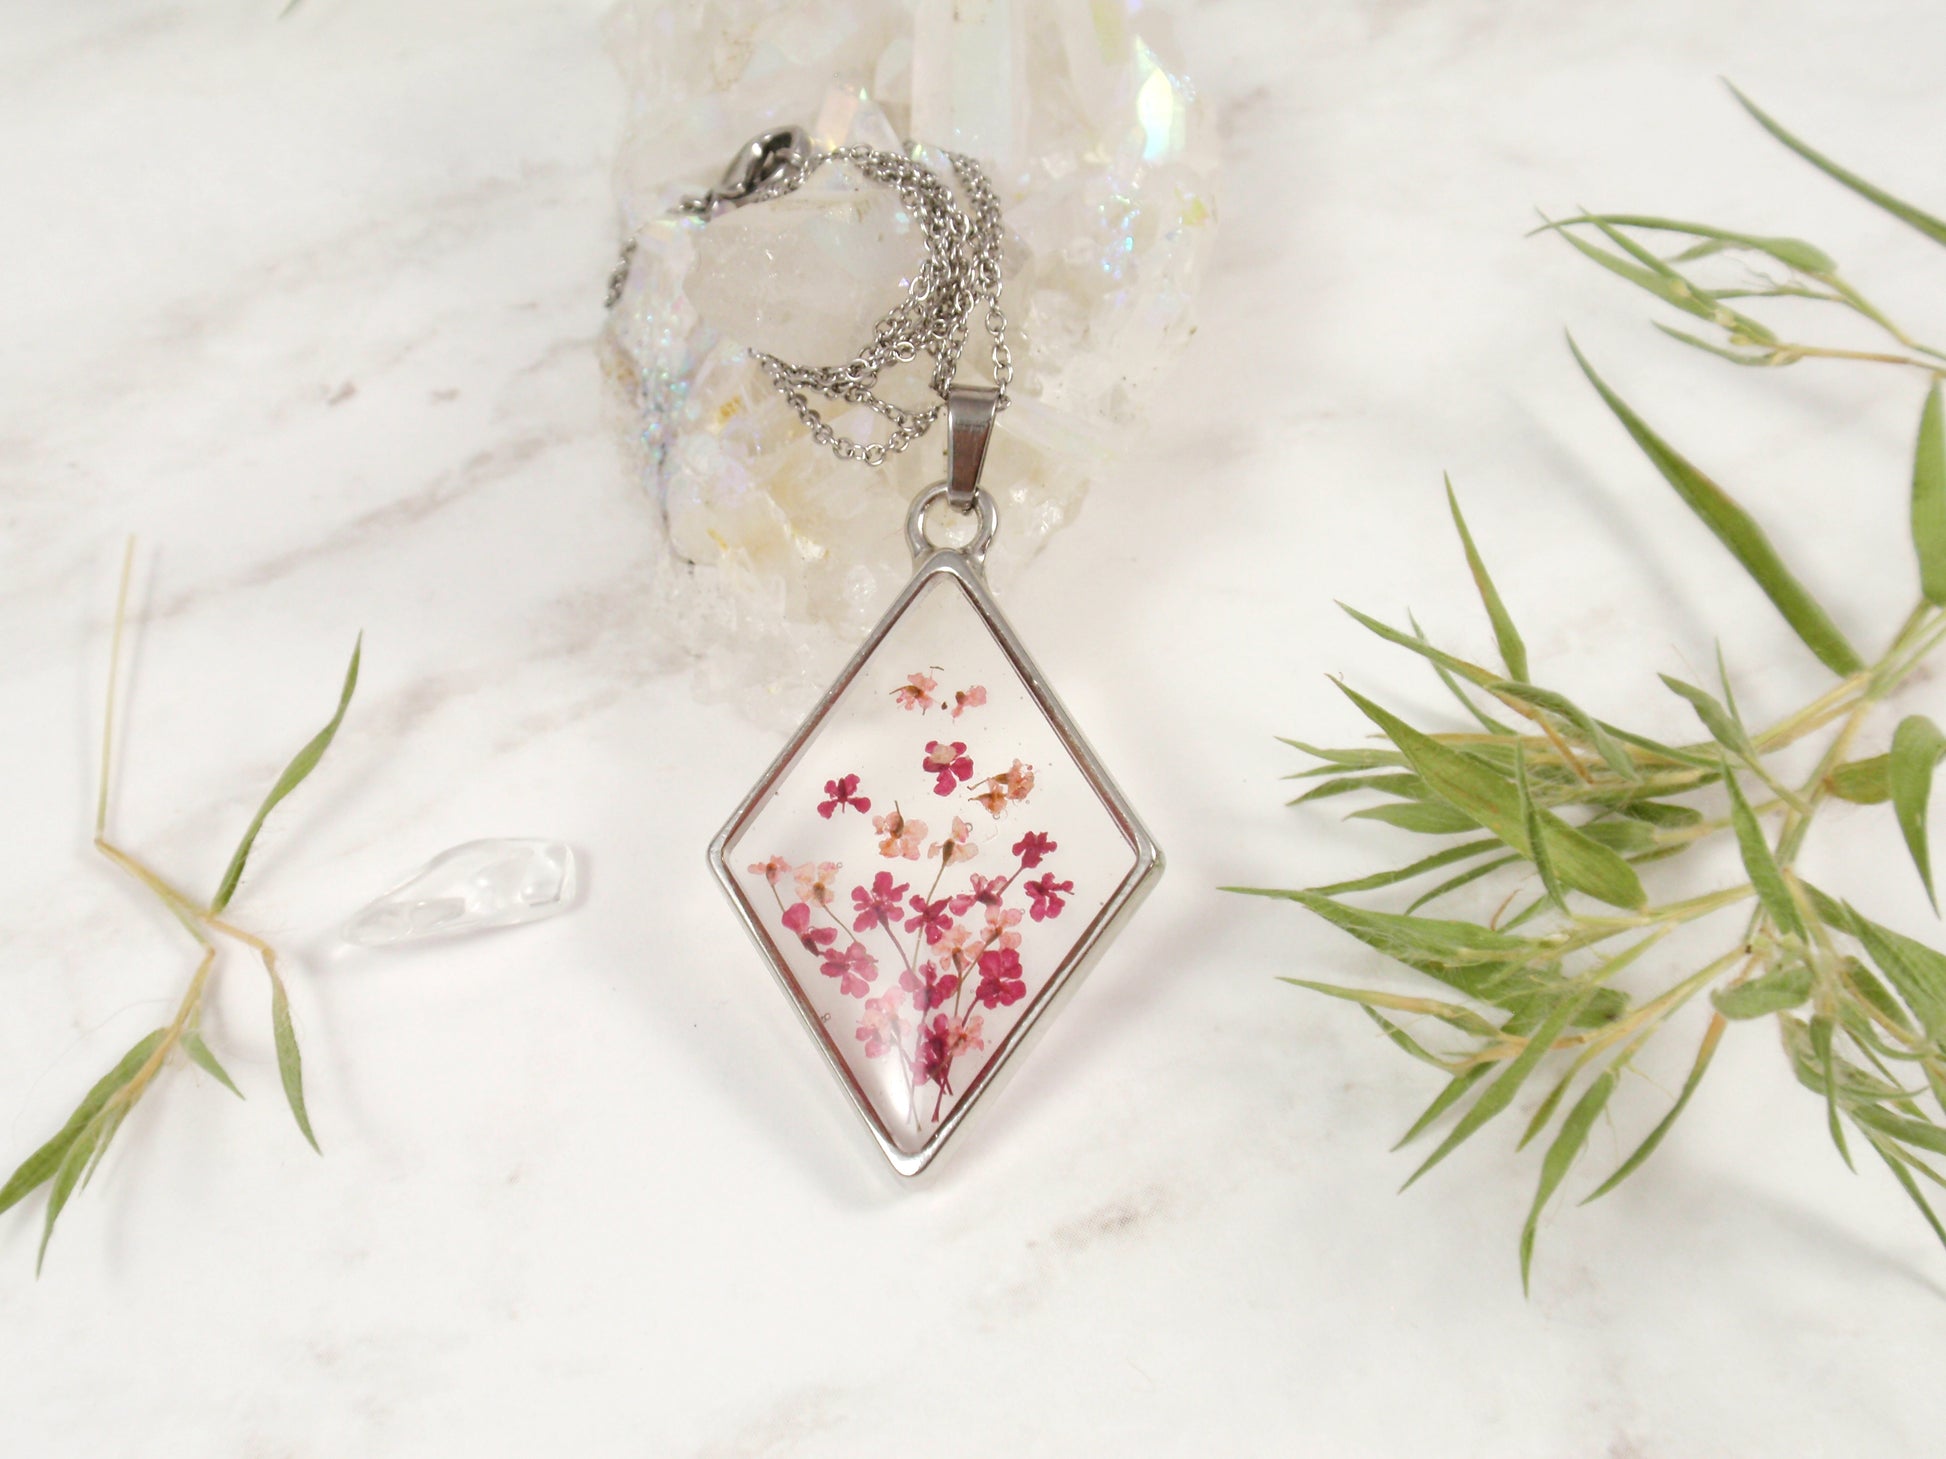 Queen Annes lace flower pendant 